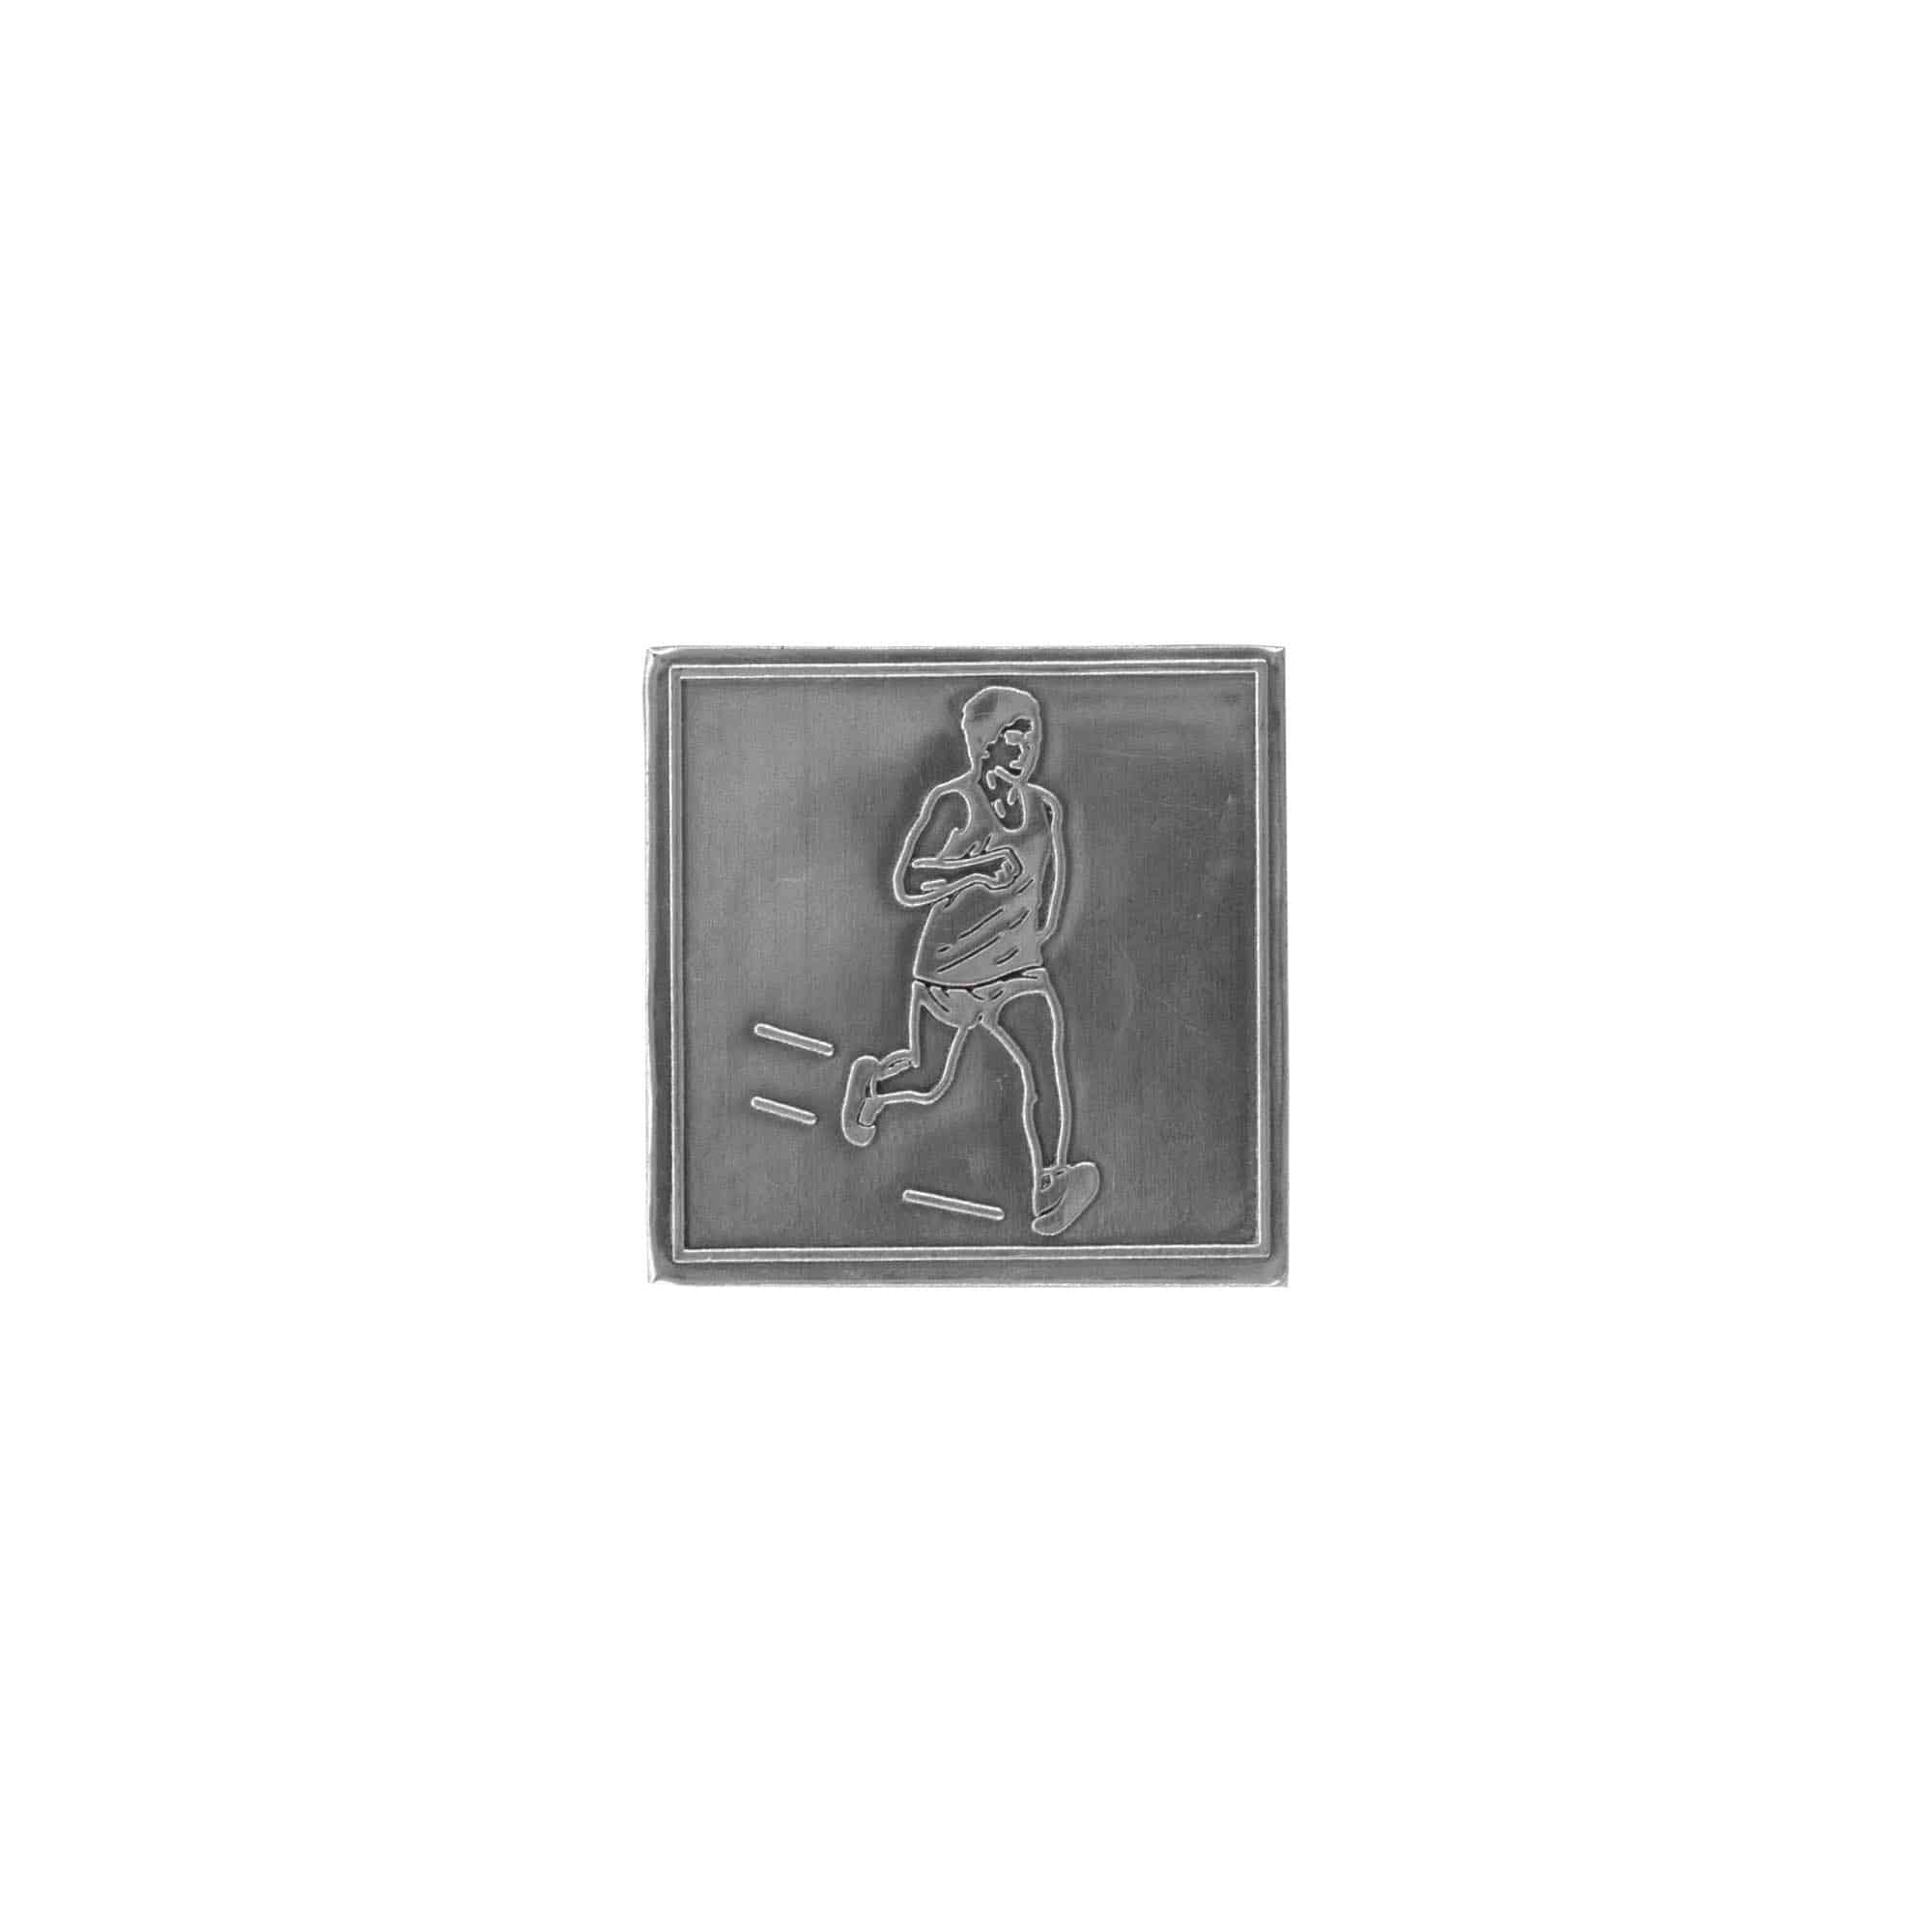 Etichetta metallica 'Jogger', quadrata, stagno, argento